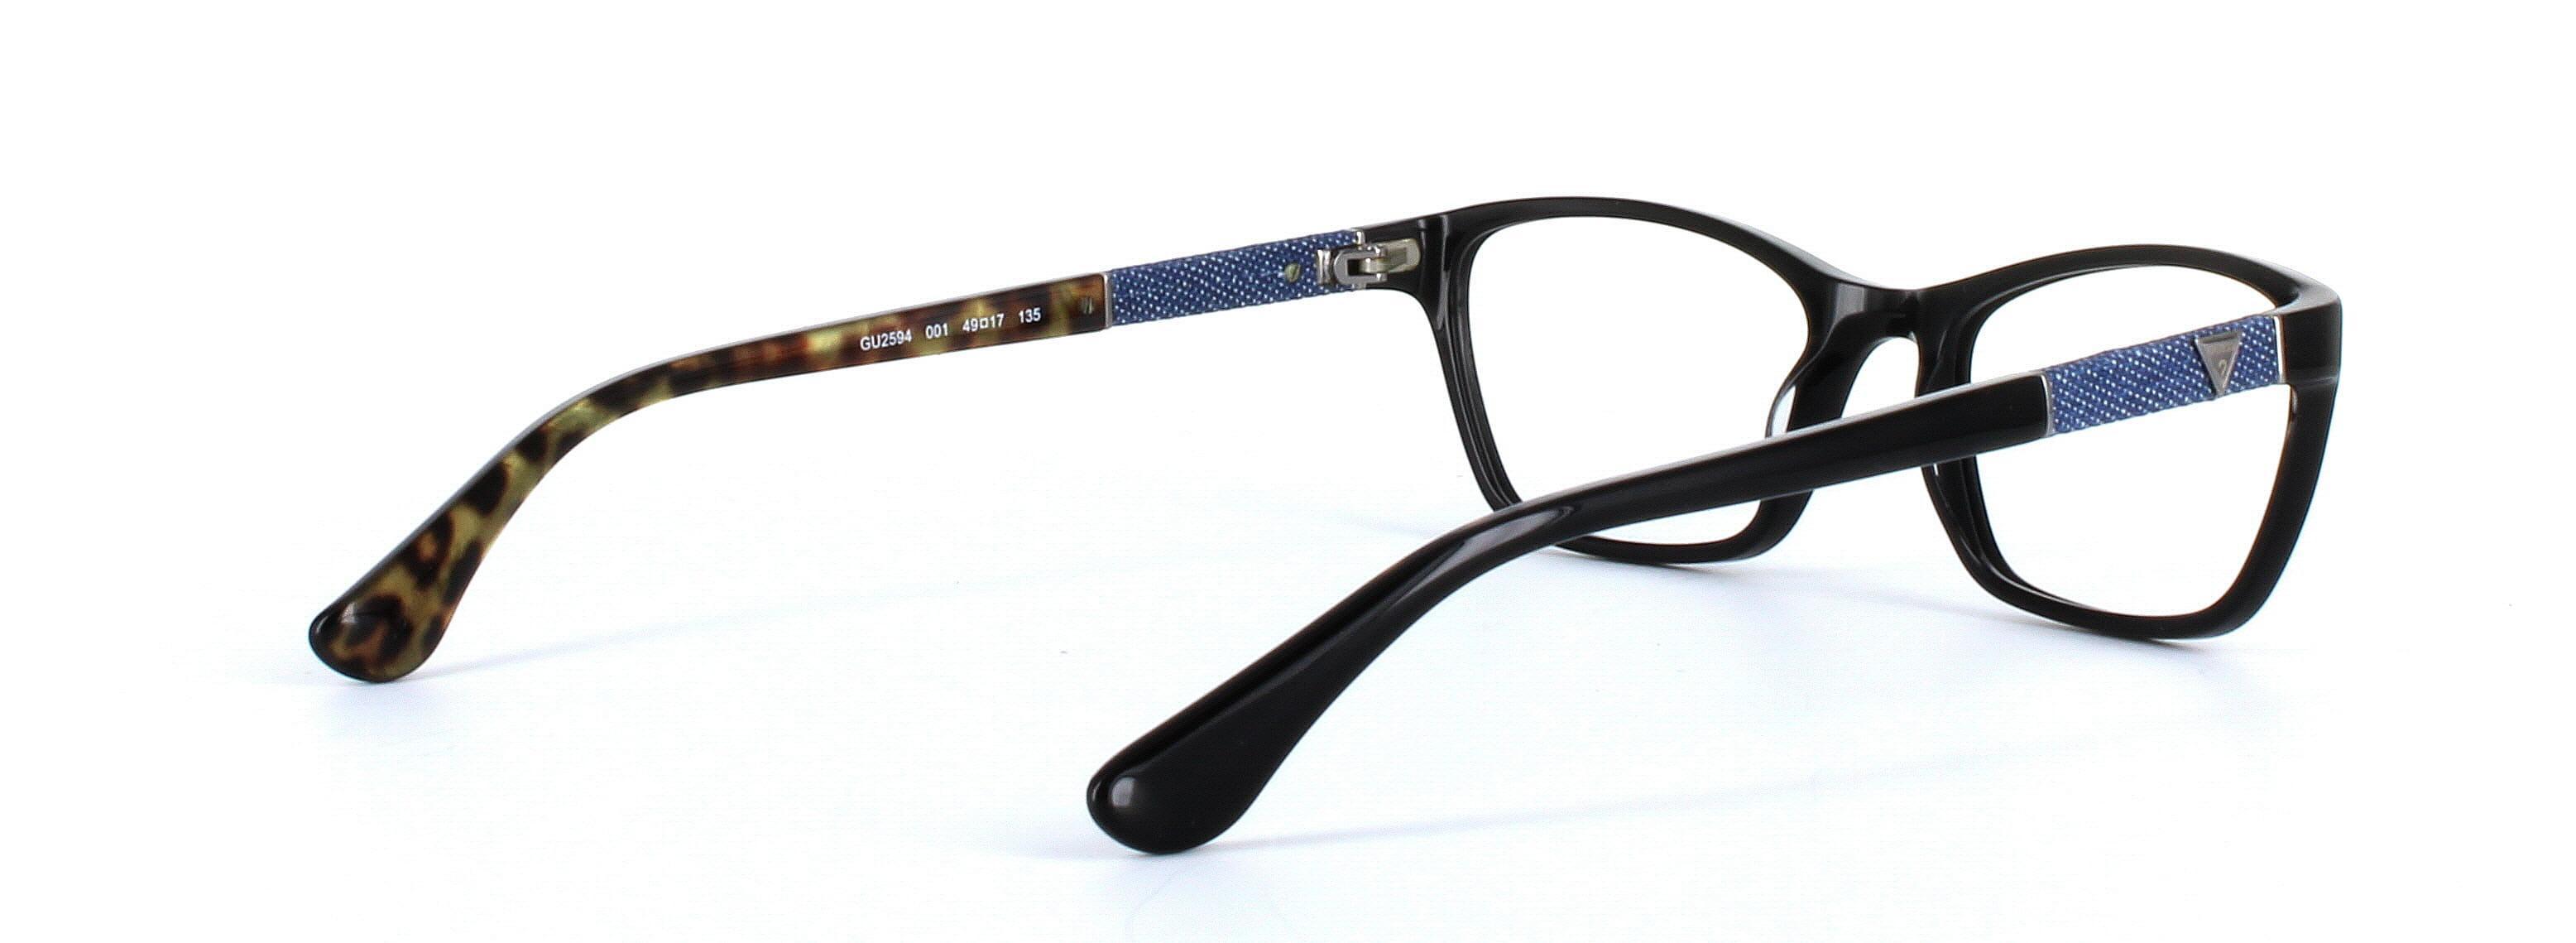 GUESS (GU2594-001) Black Full Rim Rectangular Acetate Glasses - Image View 4